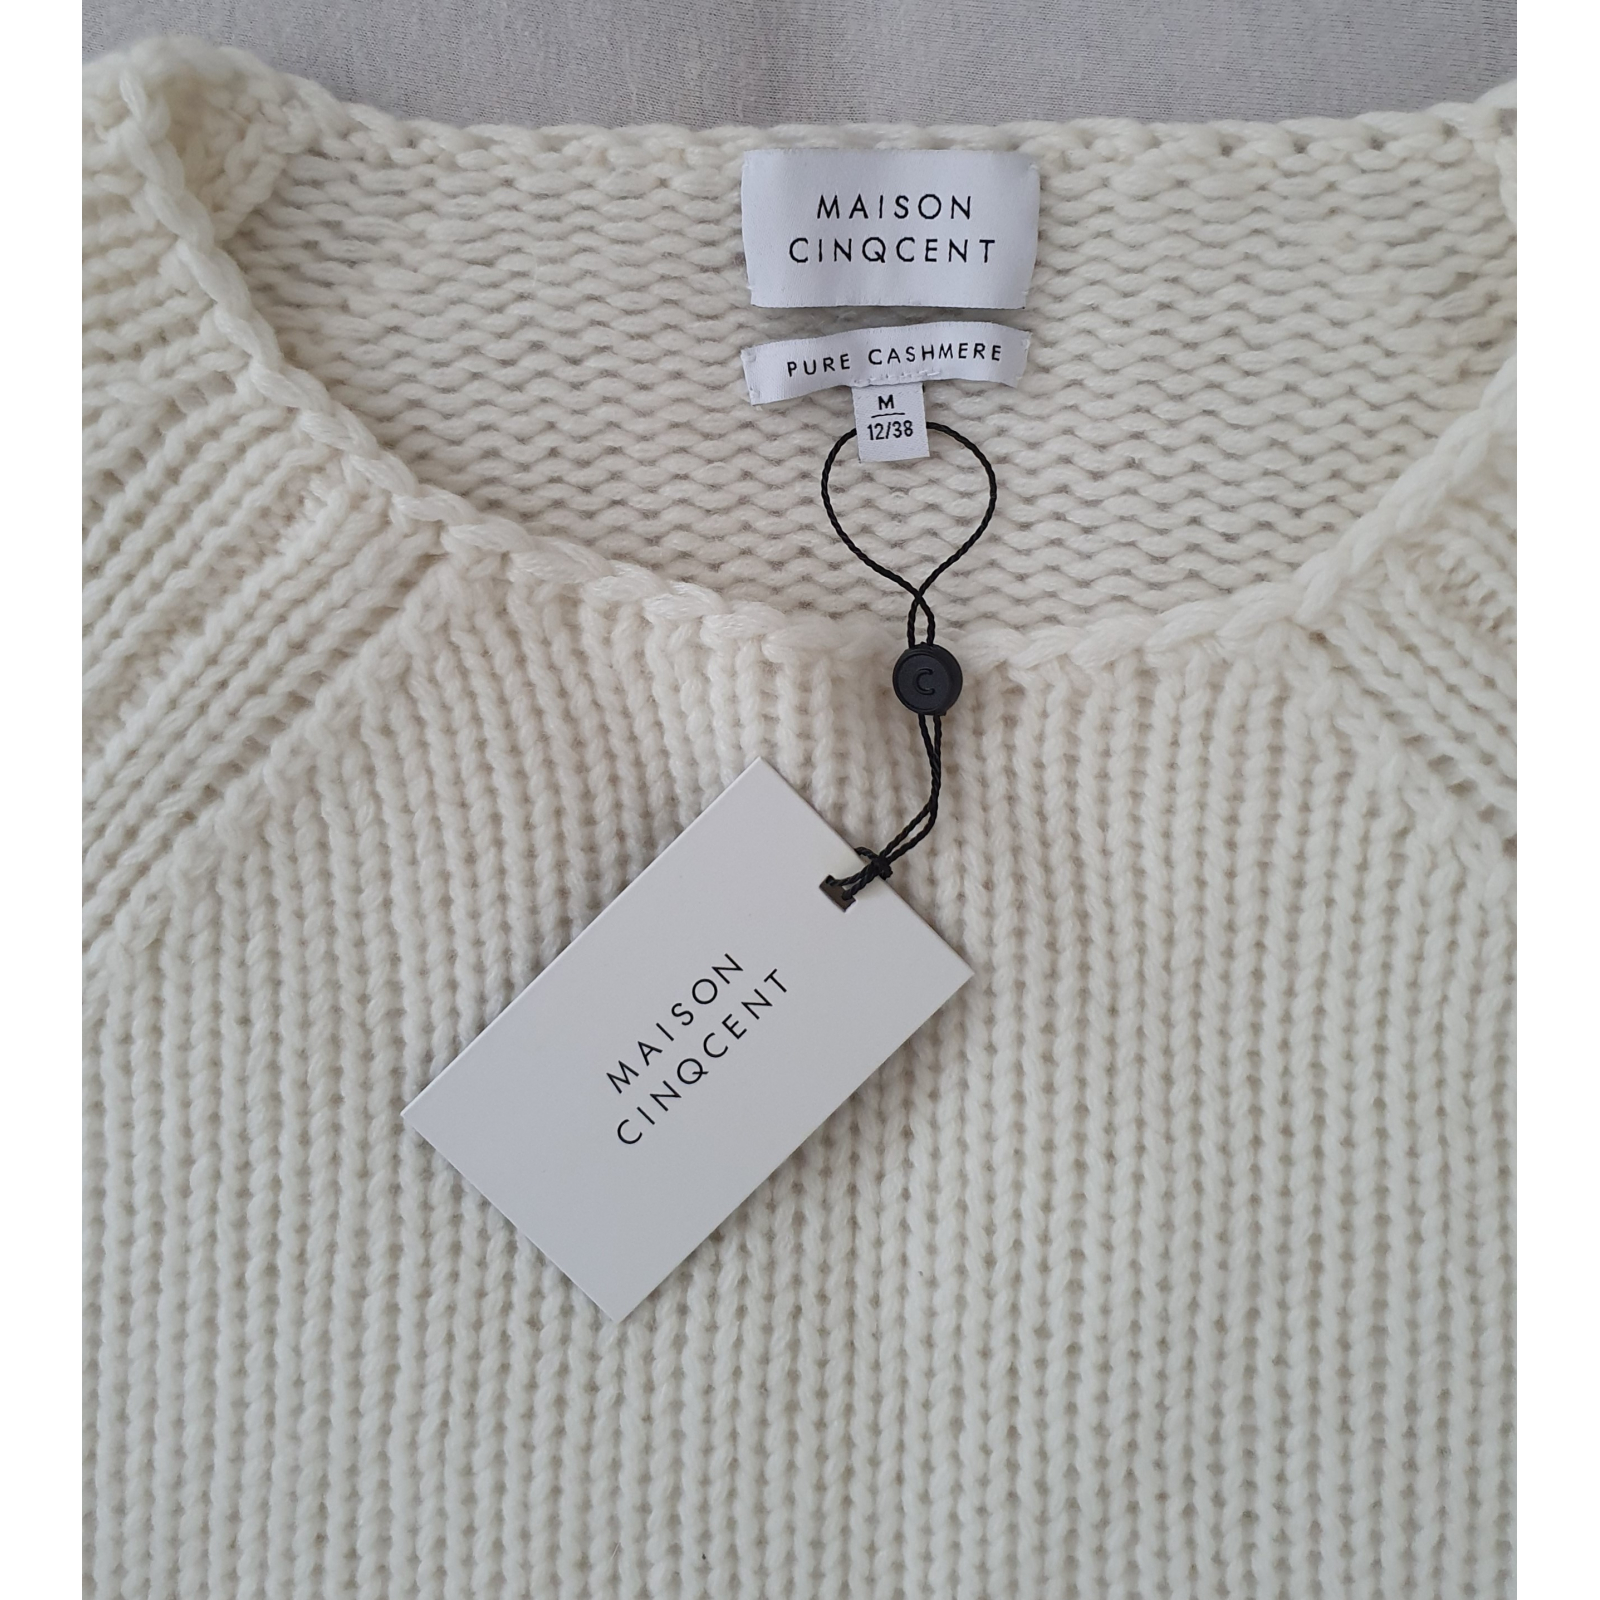 Maison Cinqcent sweter ecru, 100% kaszmir nowy